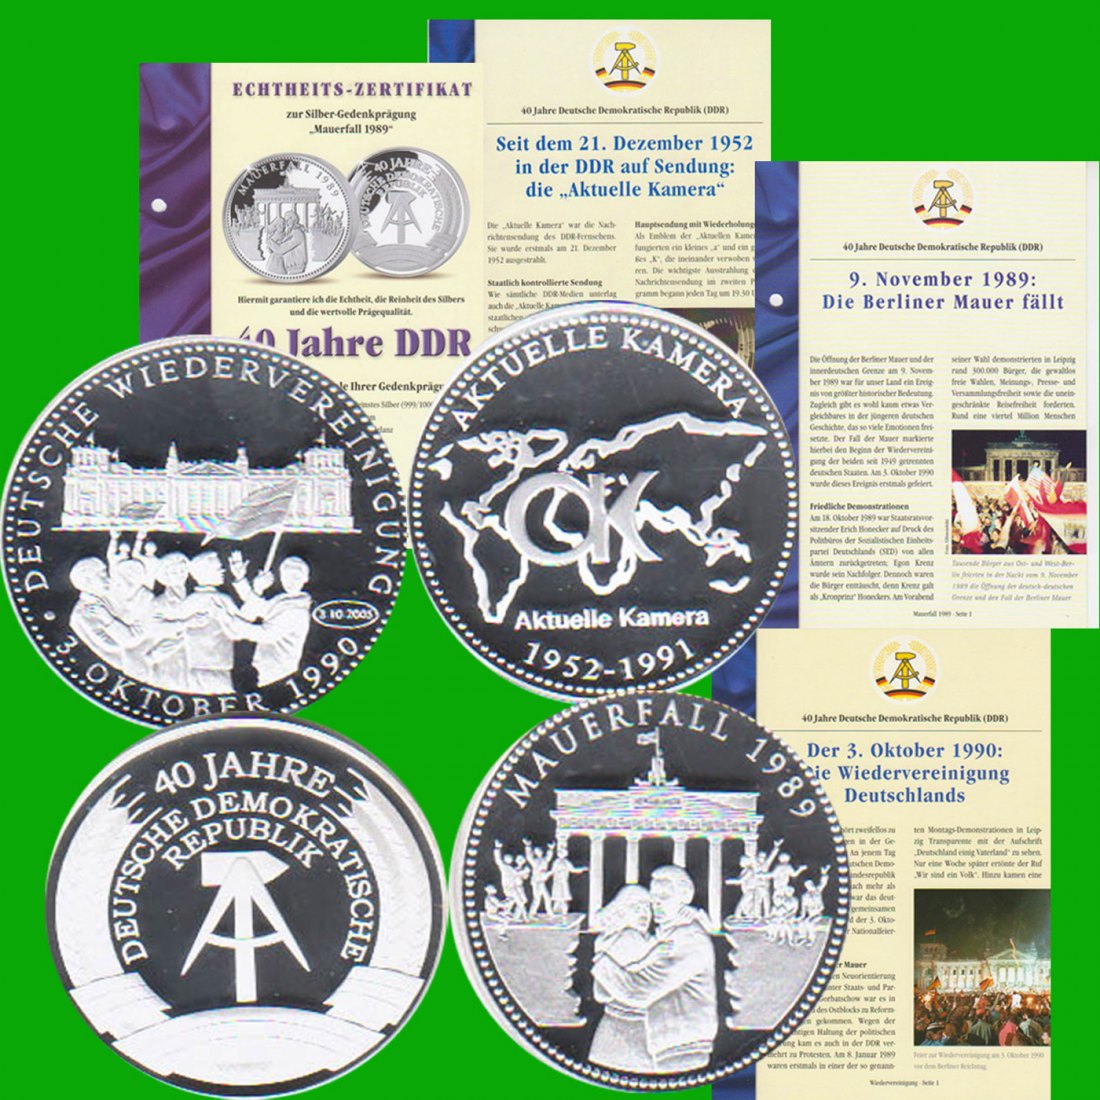  Lot von 3 Silbermedaillen *40 Jahre DDR - Mauerfall 1989* 1991 *PP* 2oz Silber Münze Berlin   